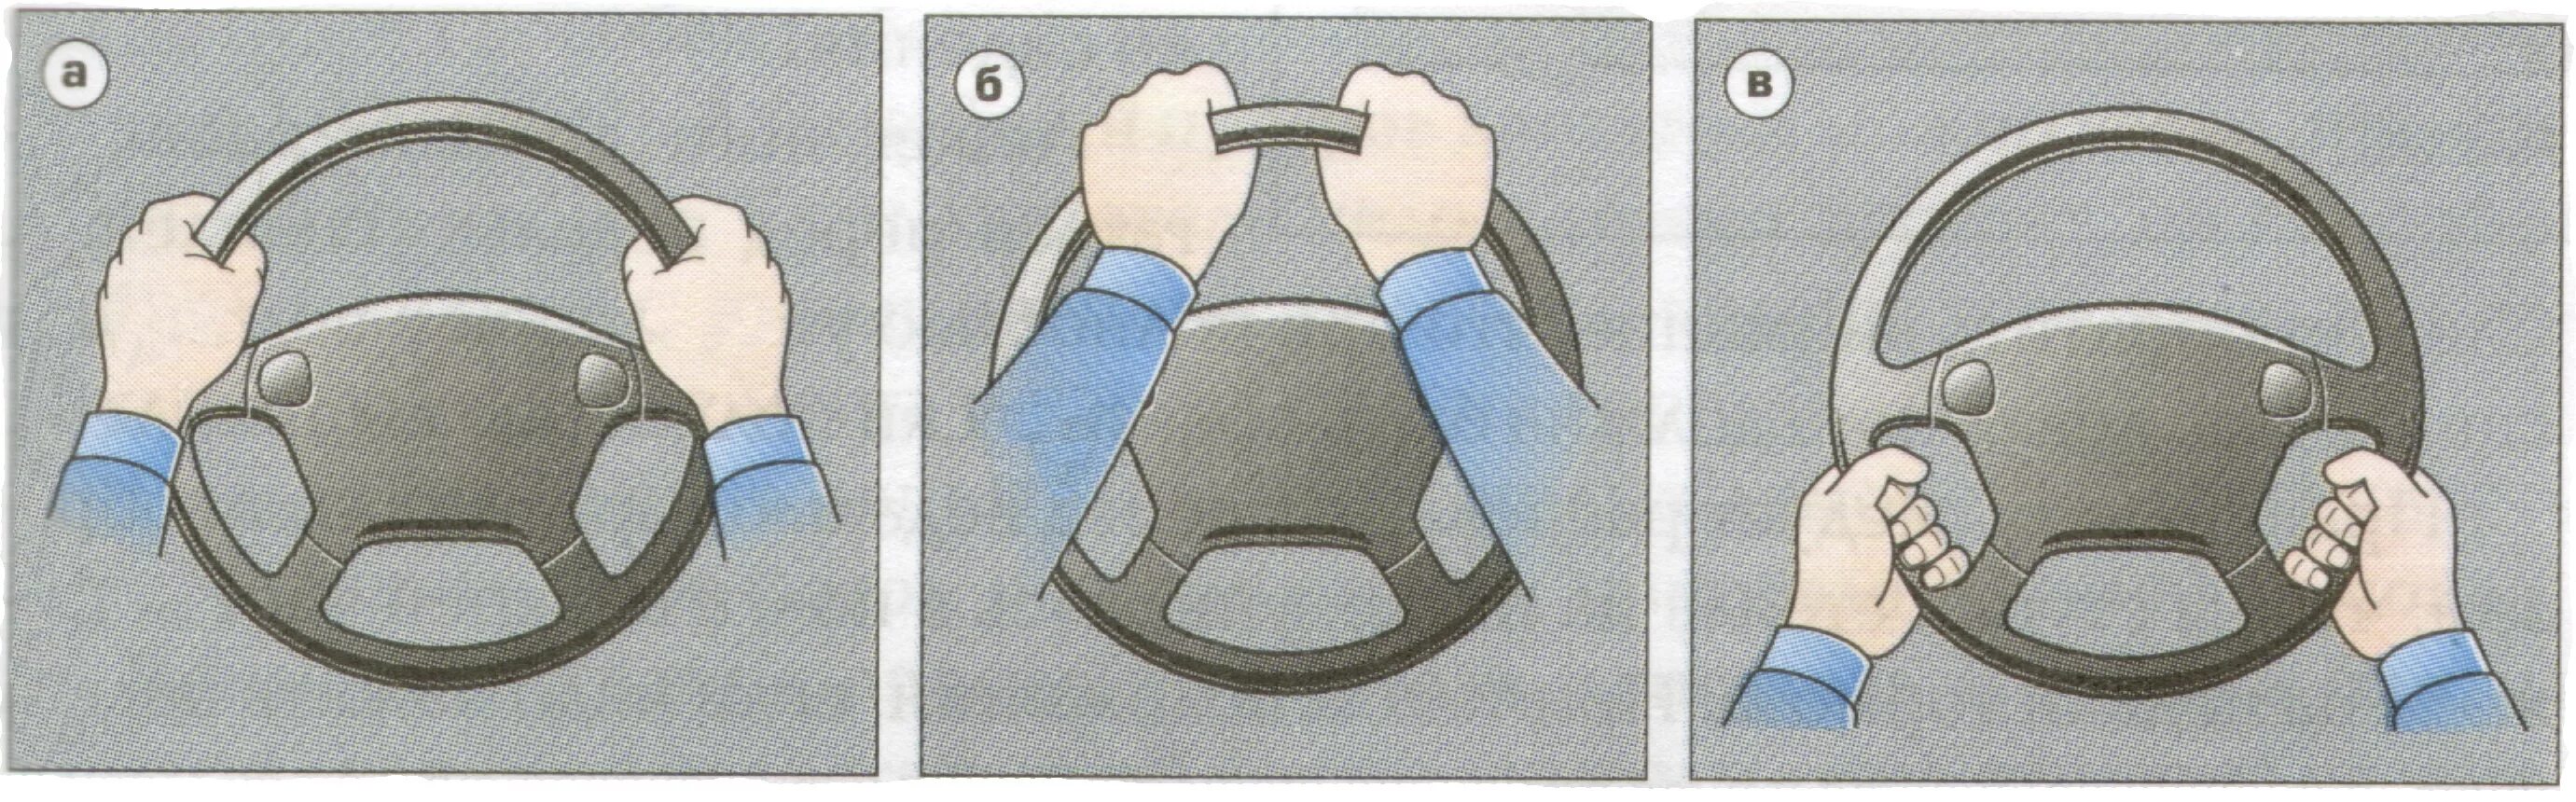 Посадить за руль без прав. Как правильно держать руль. Положение рук на руле. Правильное положение рук на руле автомобиля. Положение рук на рулевом колесе.